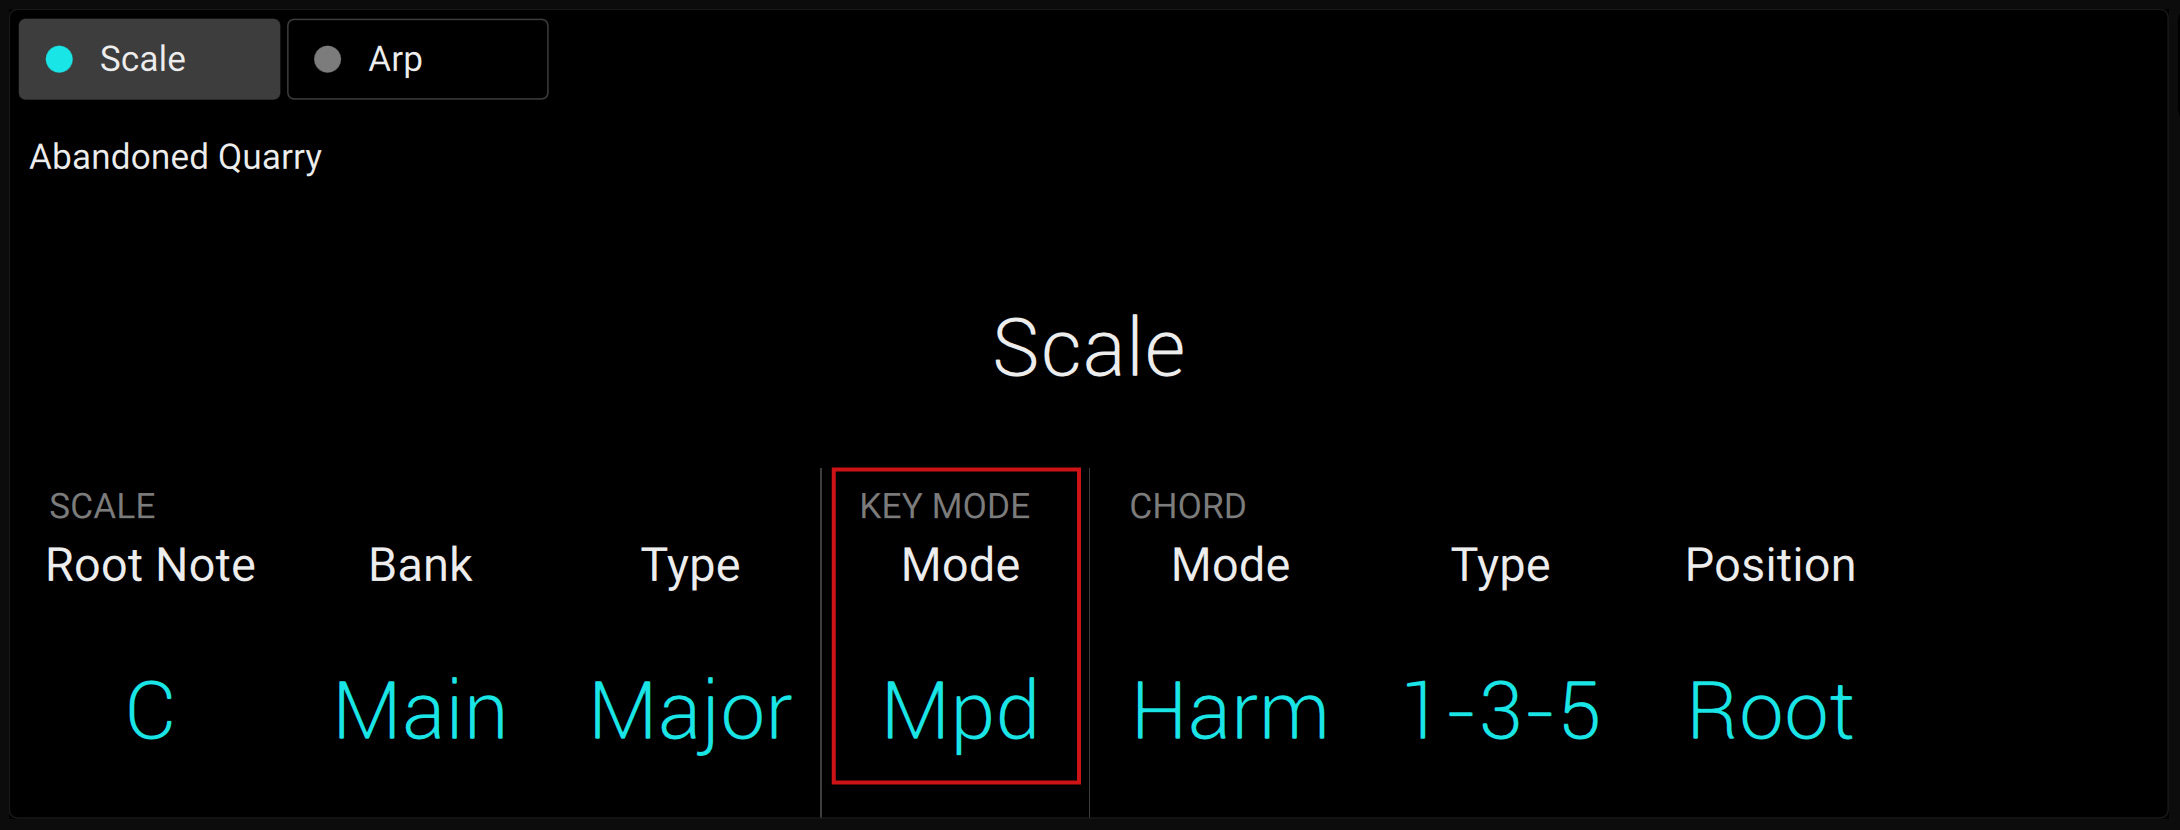 KS-MK3_D_PlayAssist-Scale-KEYMODEParameter.jpg